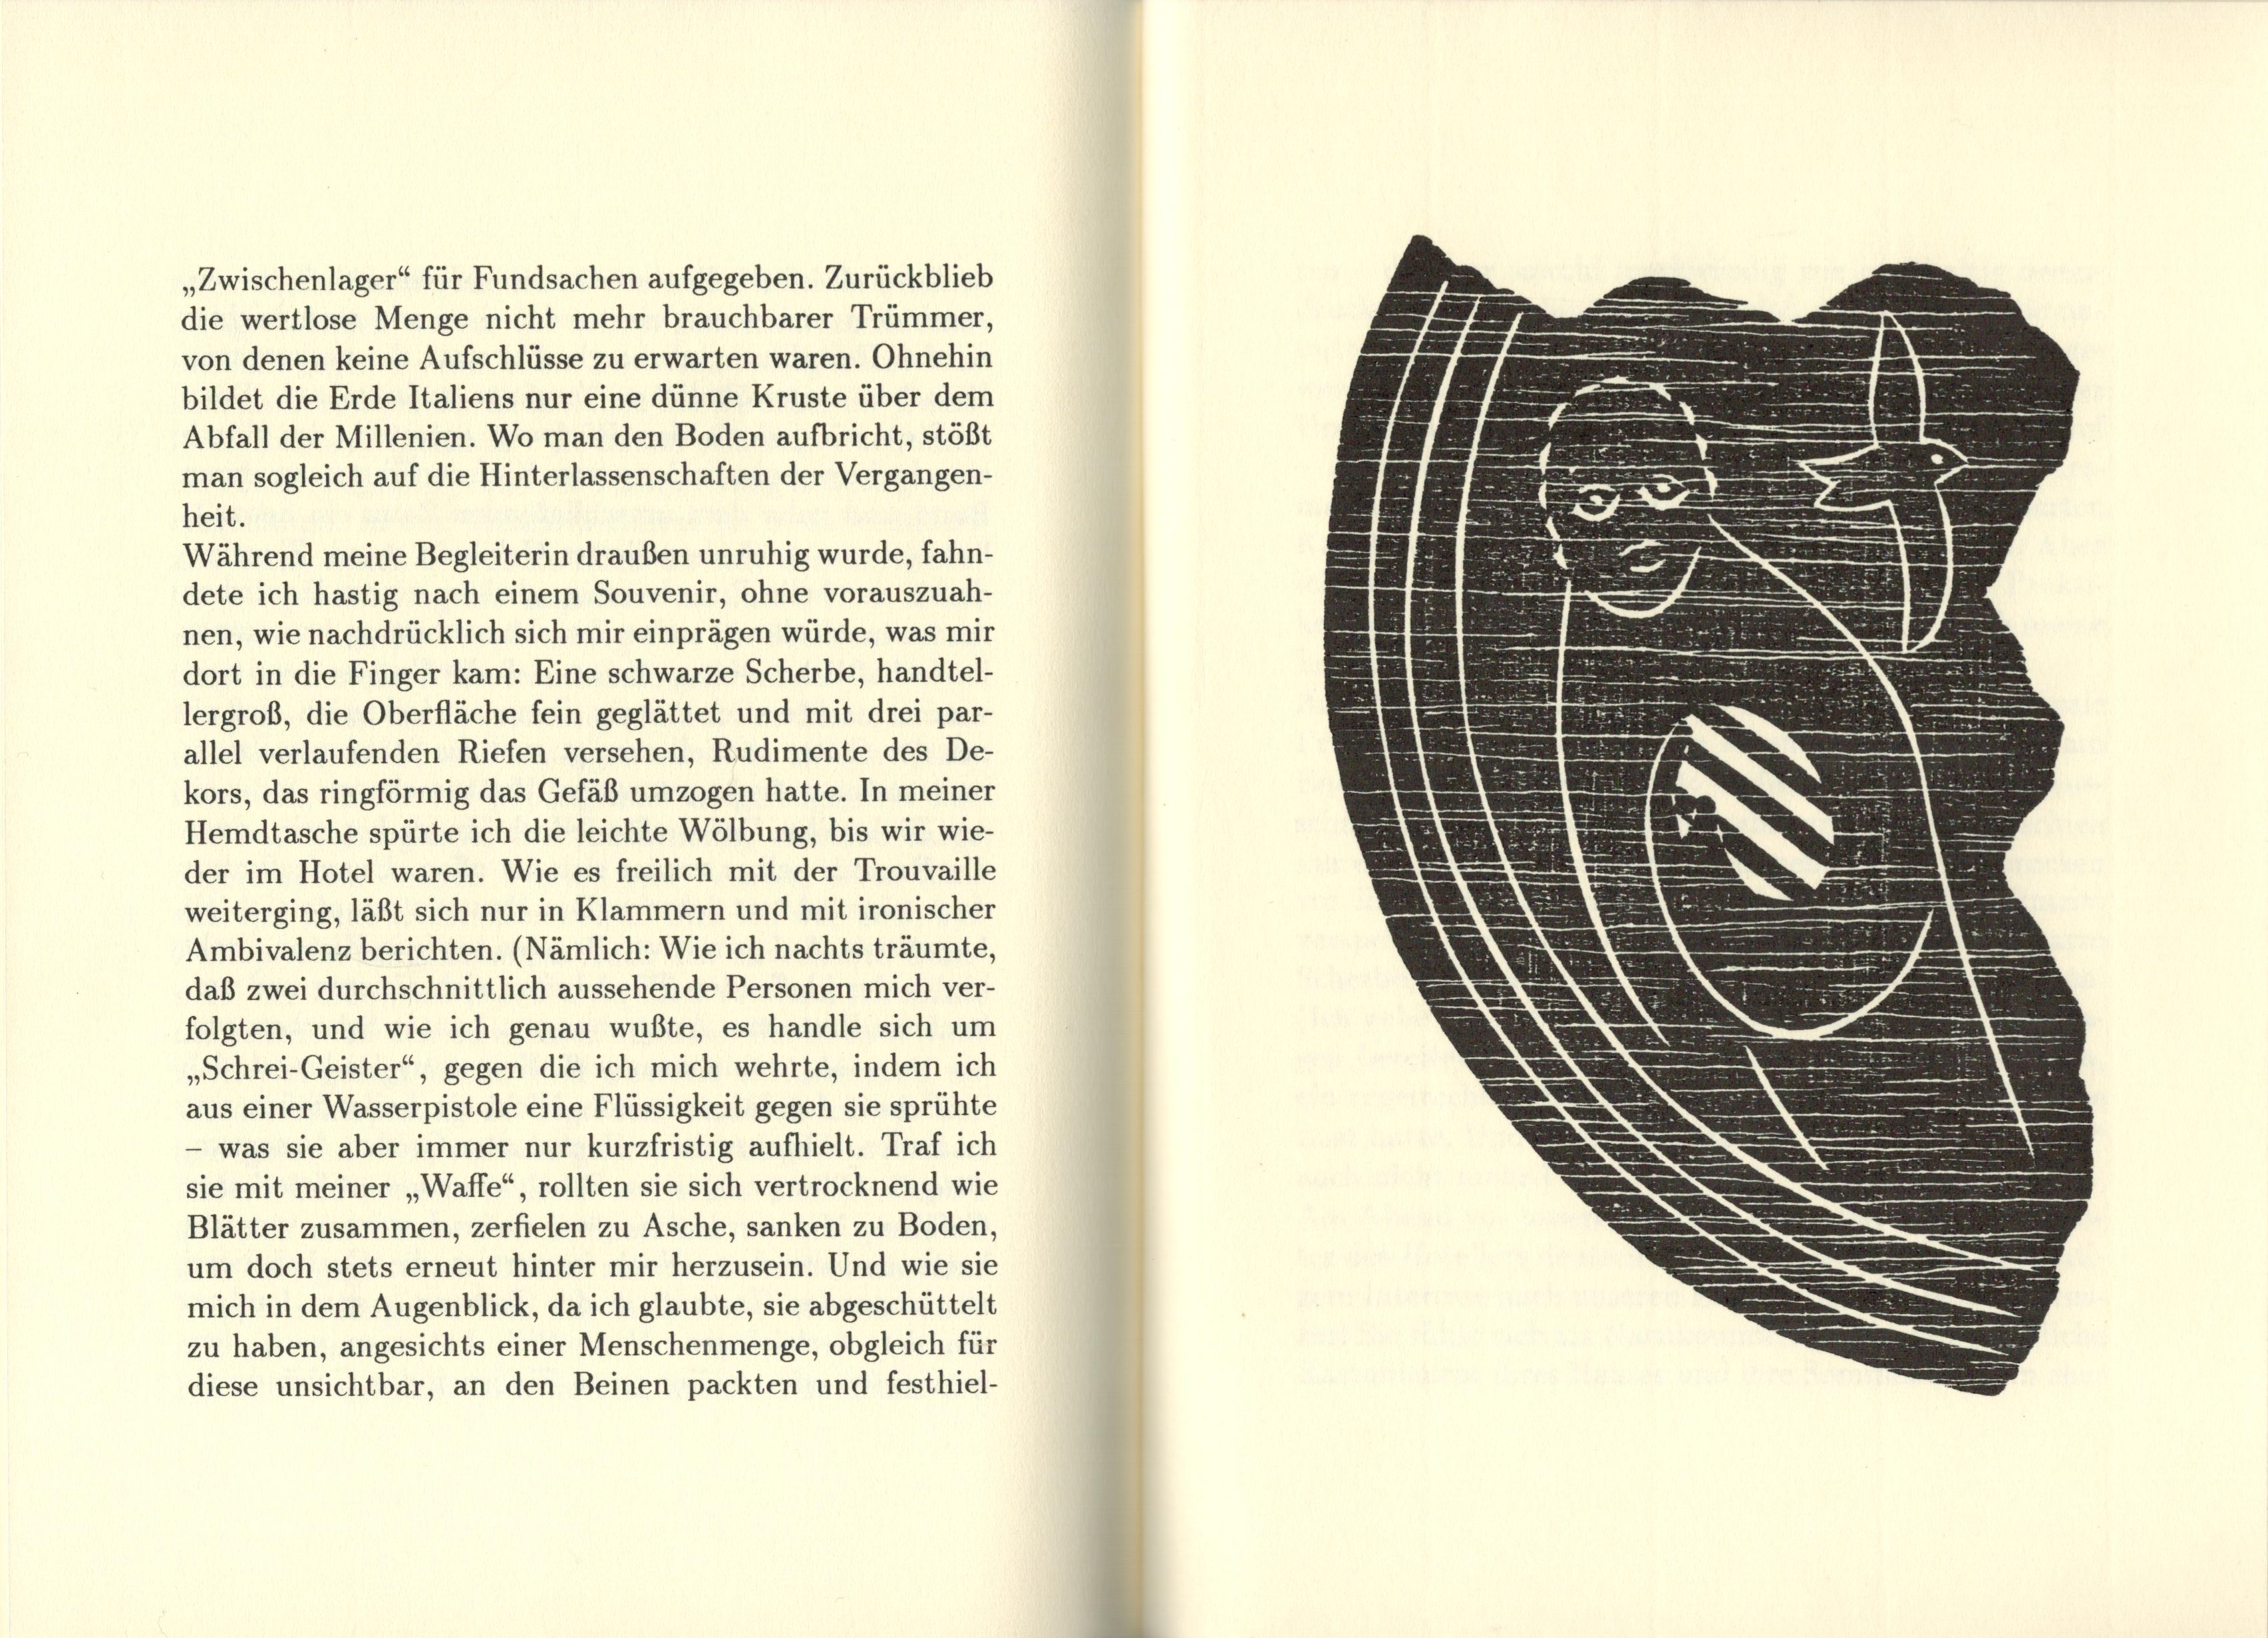 Morpheus aus der Unterwelt - Ausschnitt aus dem Buch